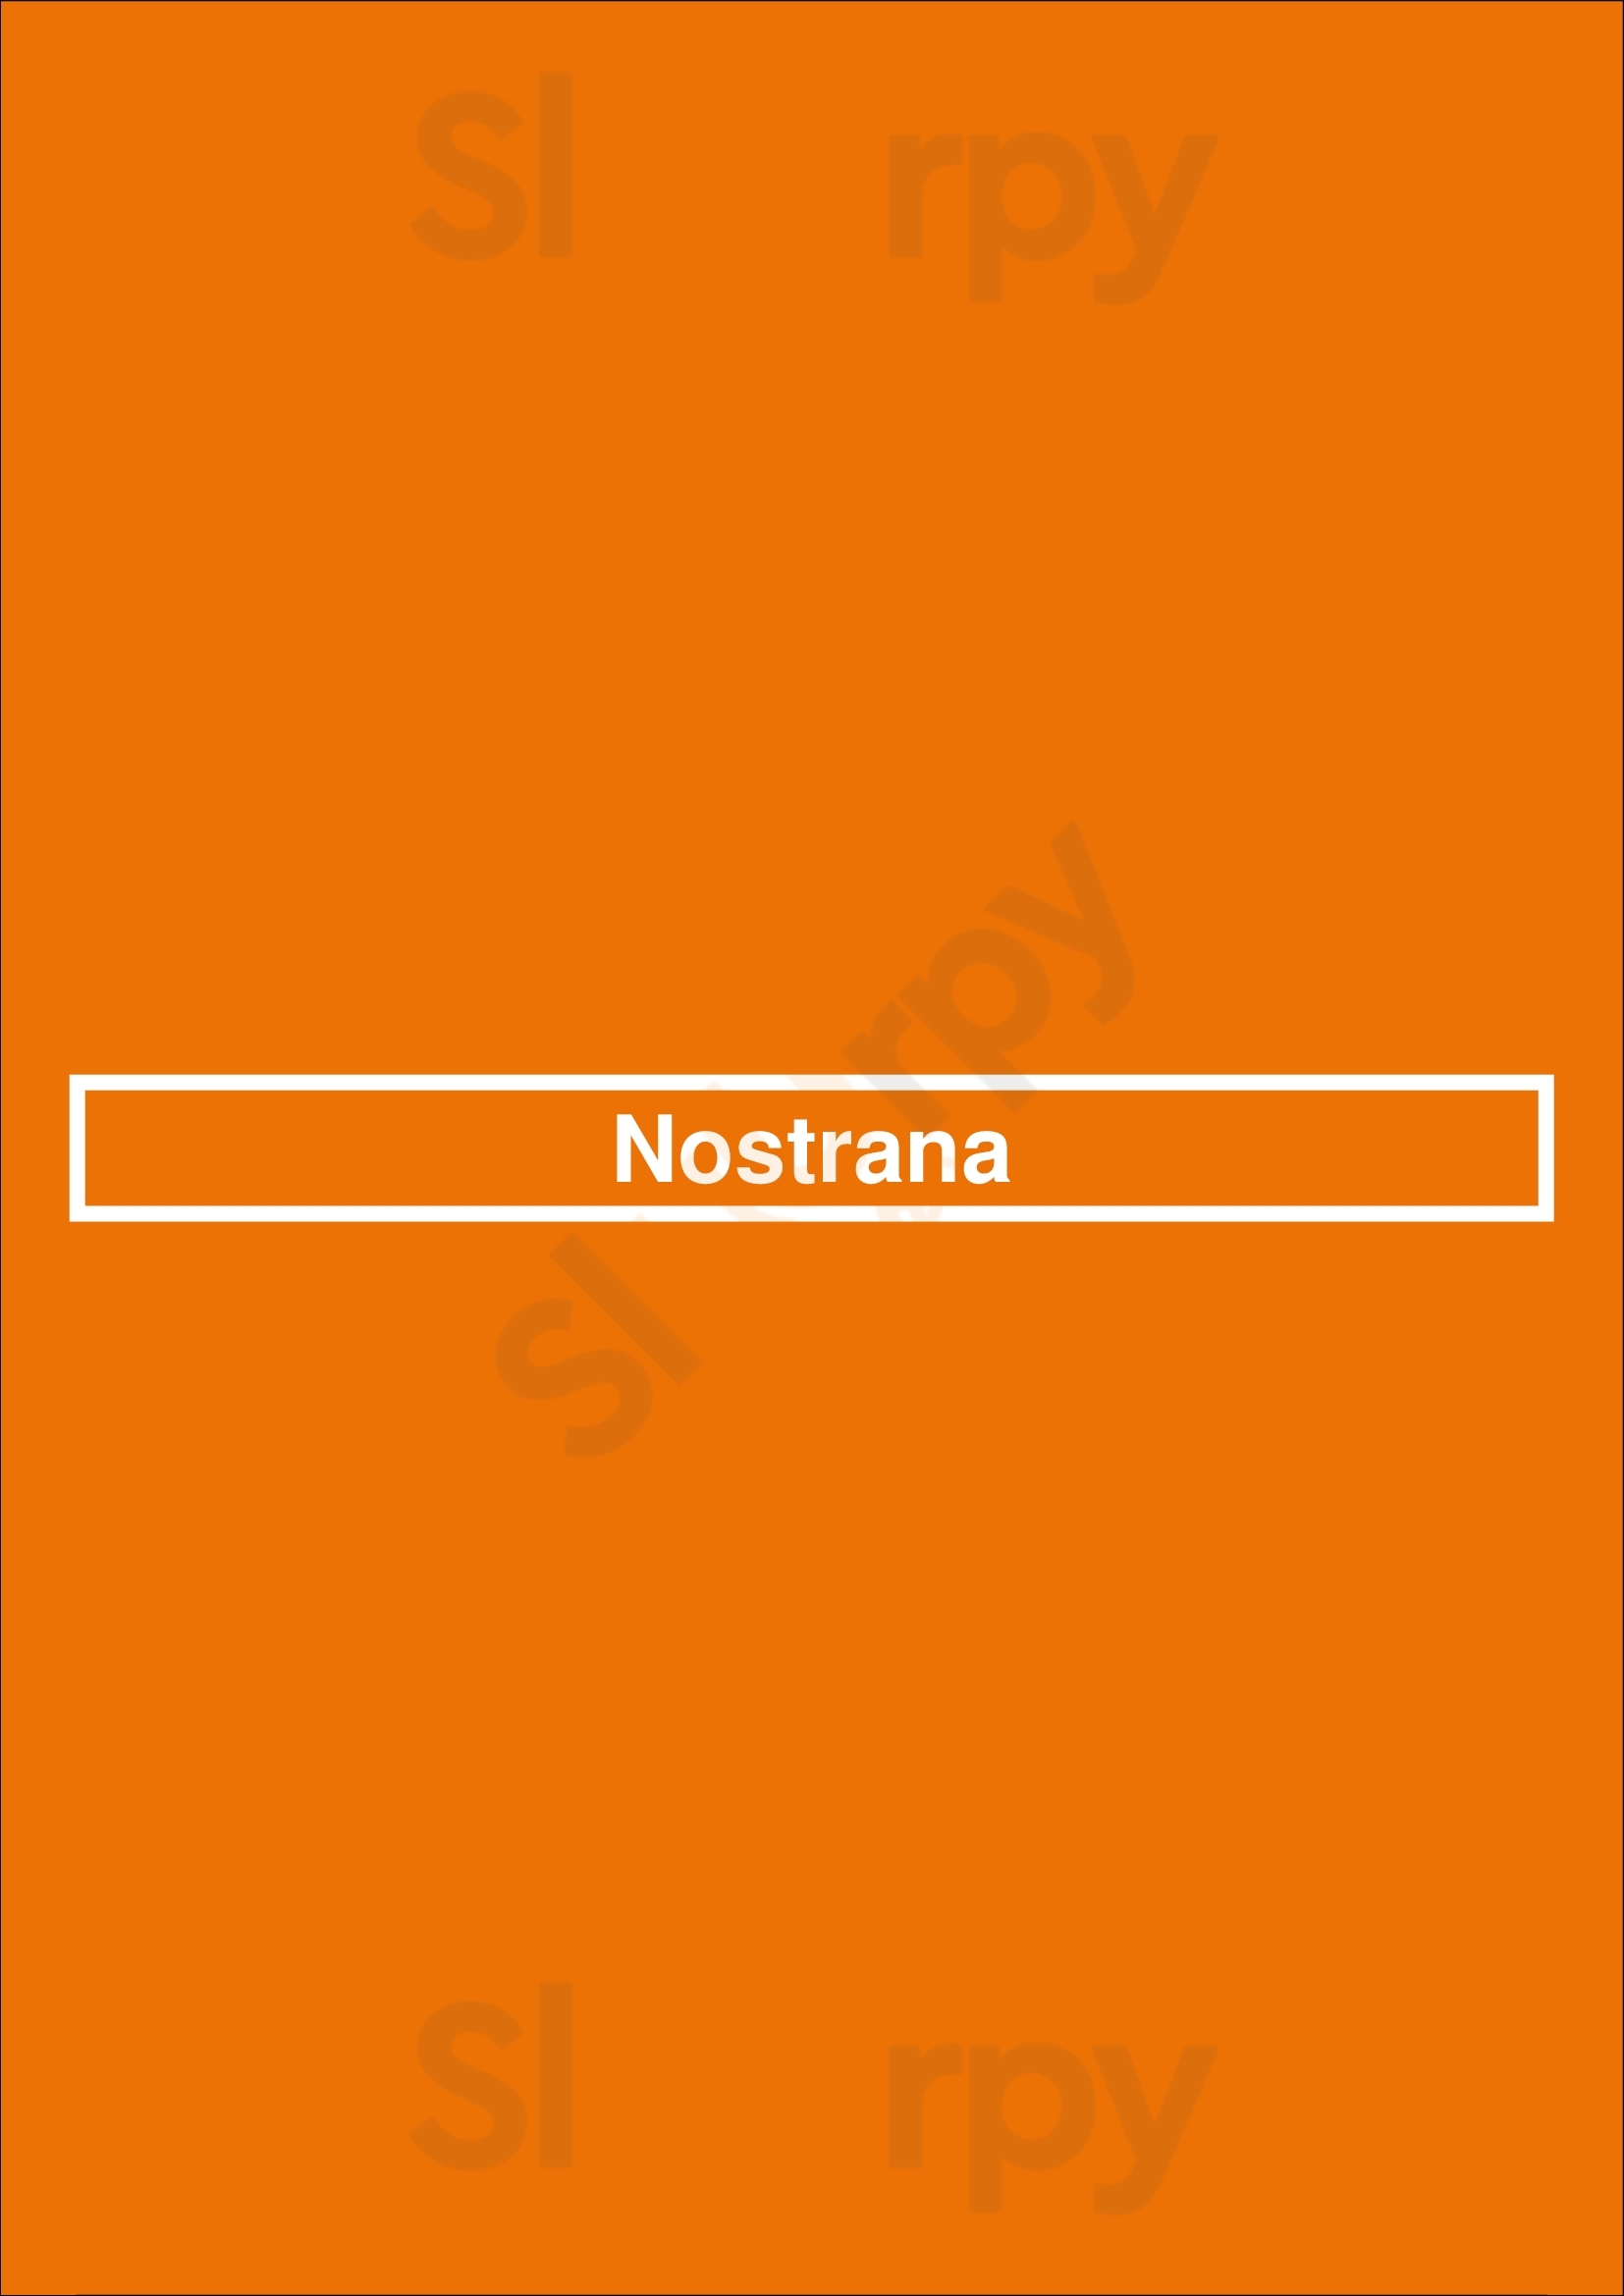 Nostrana Portland Menu - 1